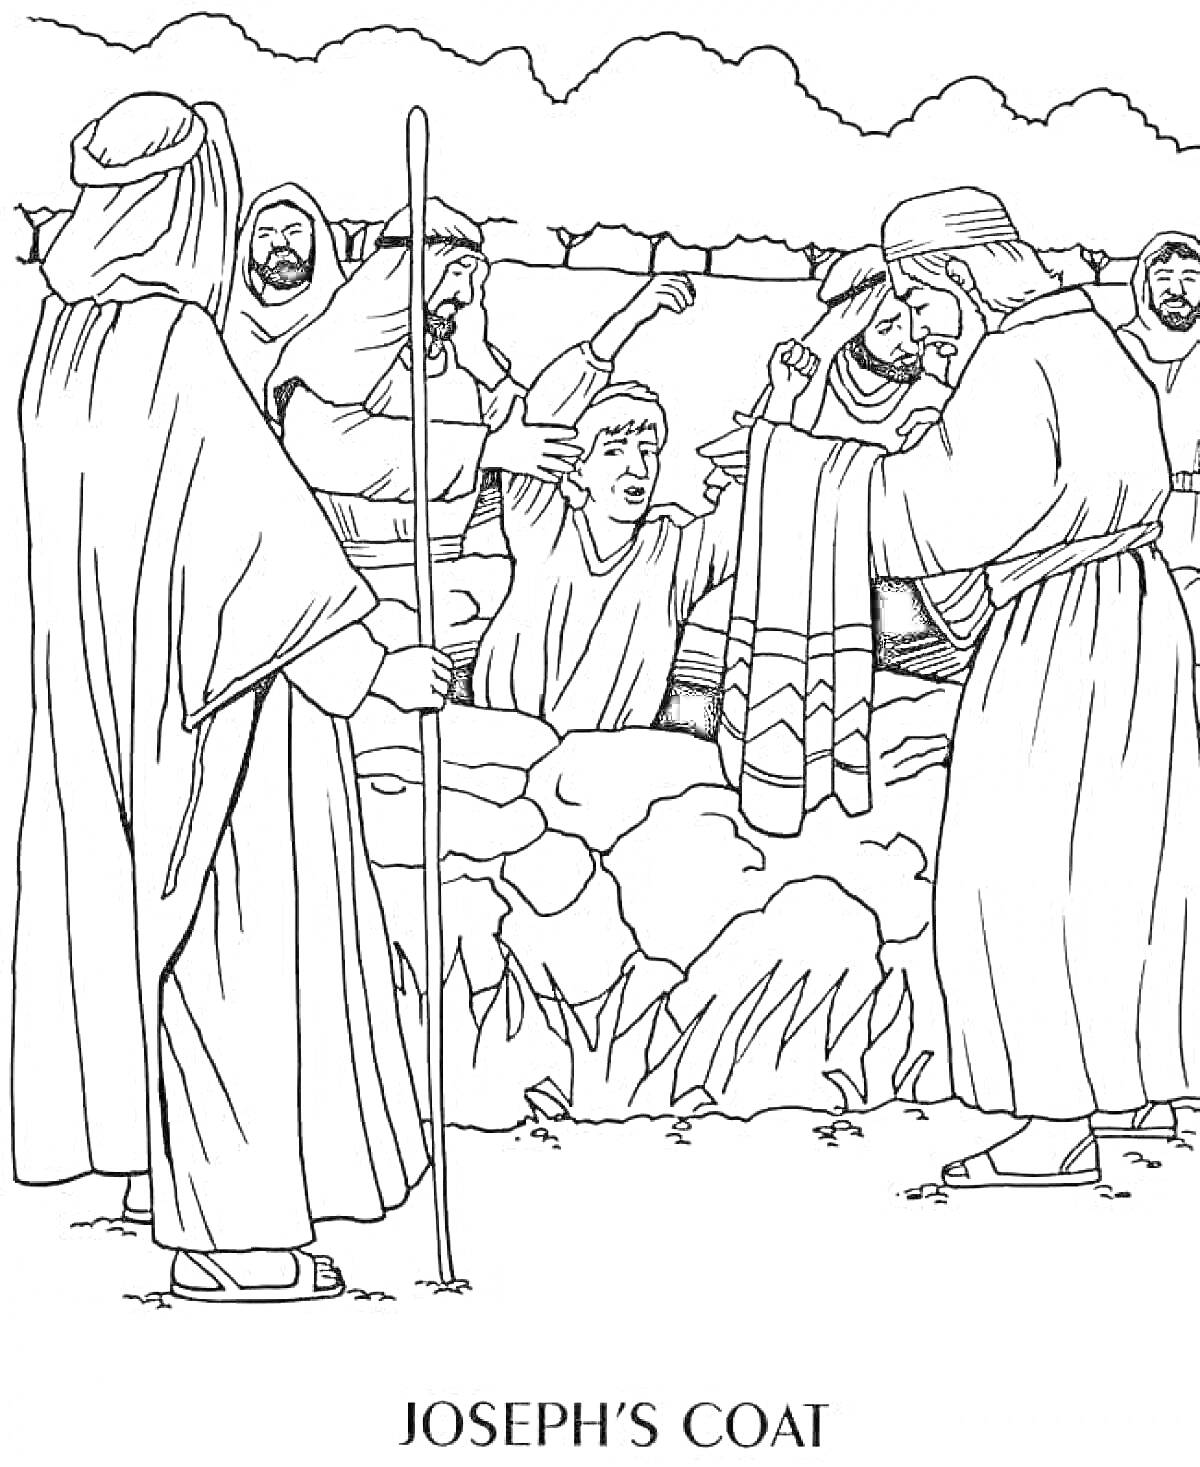 Раскраска Рисунок - Иосиф, братья вокруг и одежда (JOSEPH'S COAT), фигуры людей, яма, кусты на переднем плане, следящее дерево, облака на заднем плане.